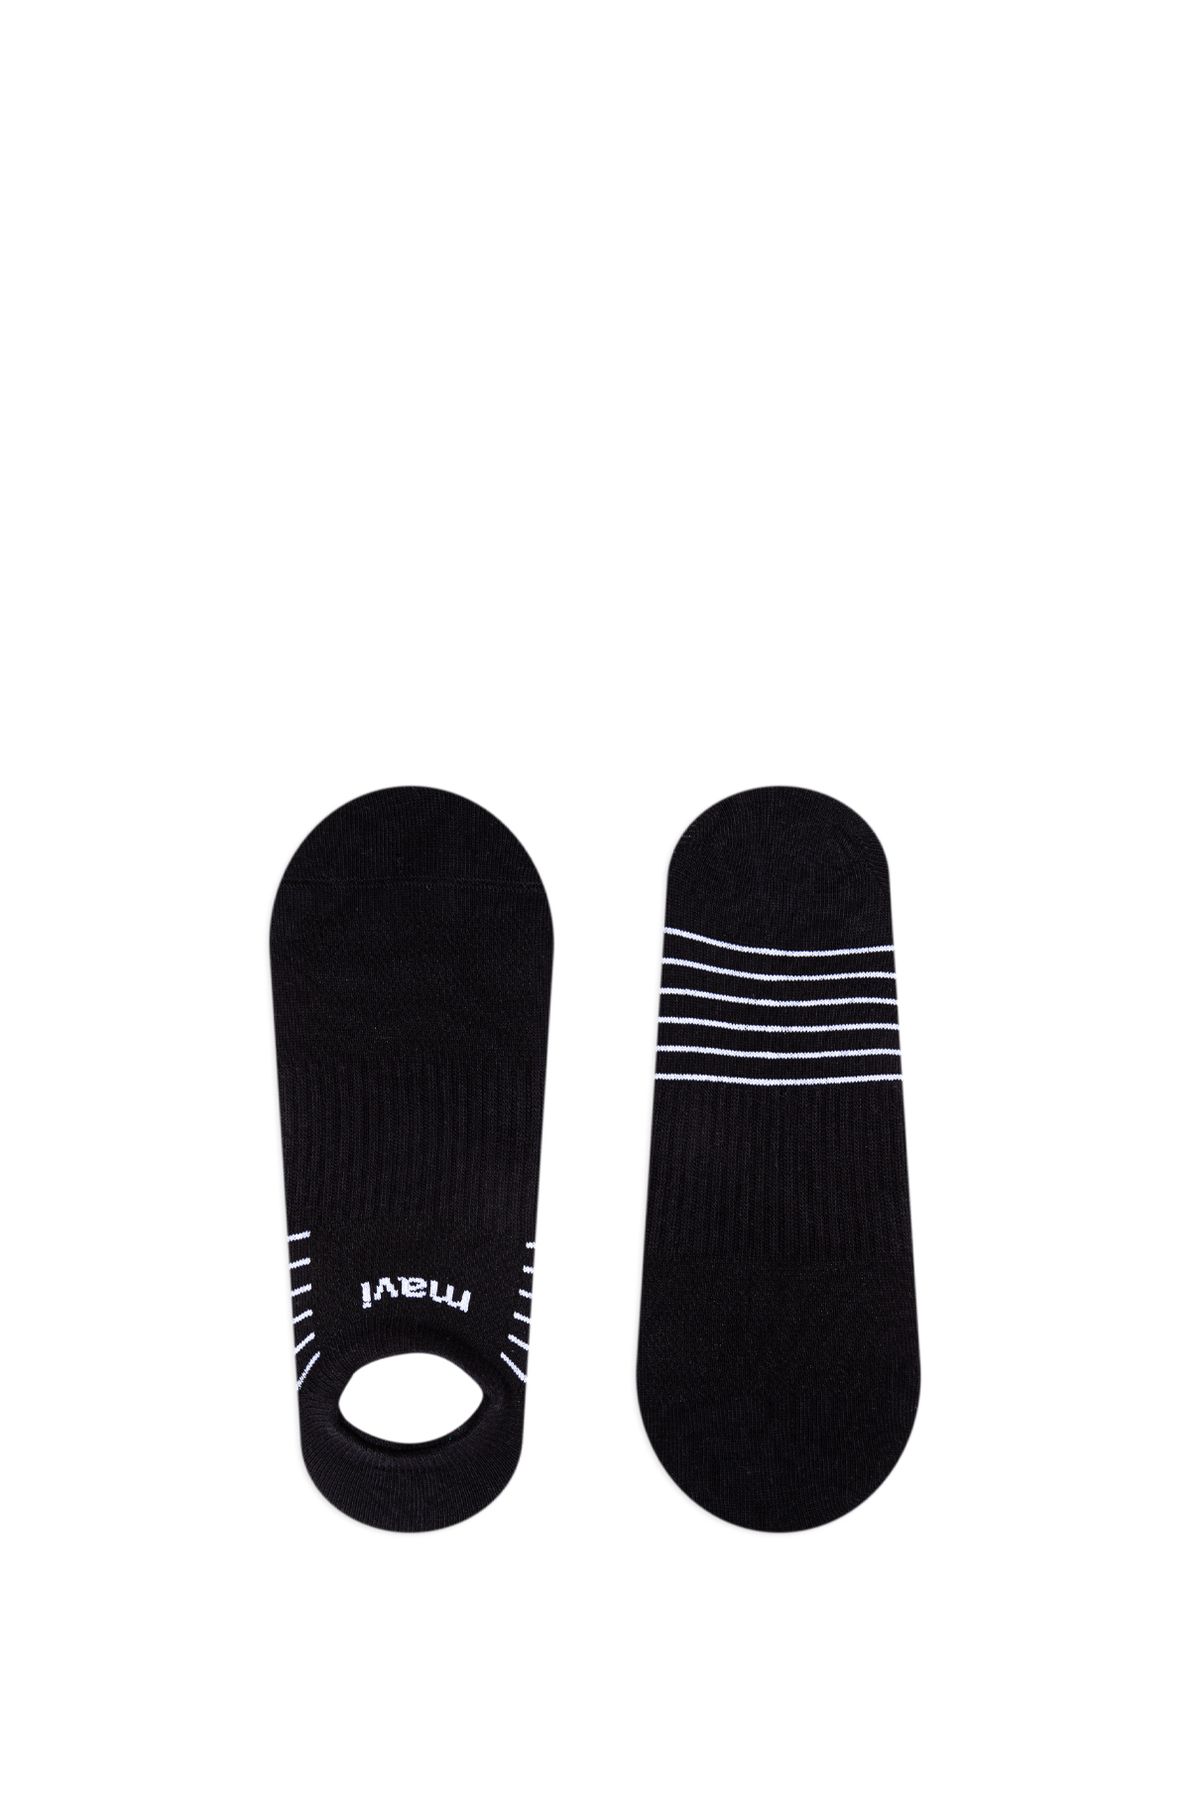 Mavi Siyah Babet Çorabı 0910773-900